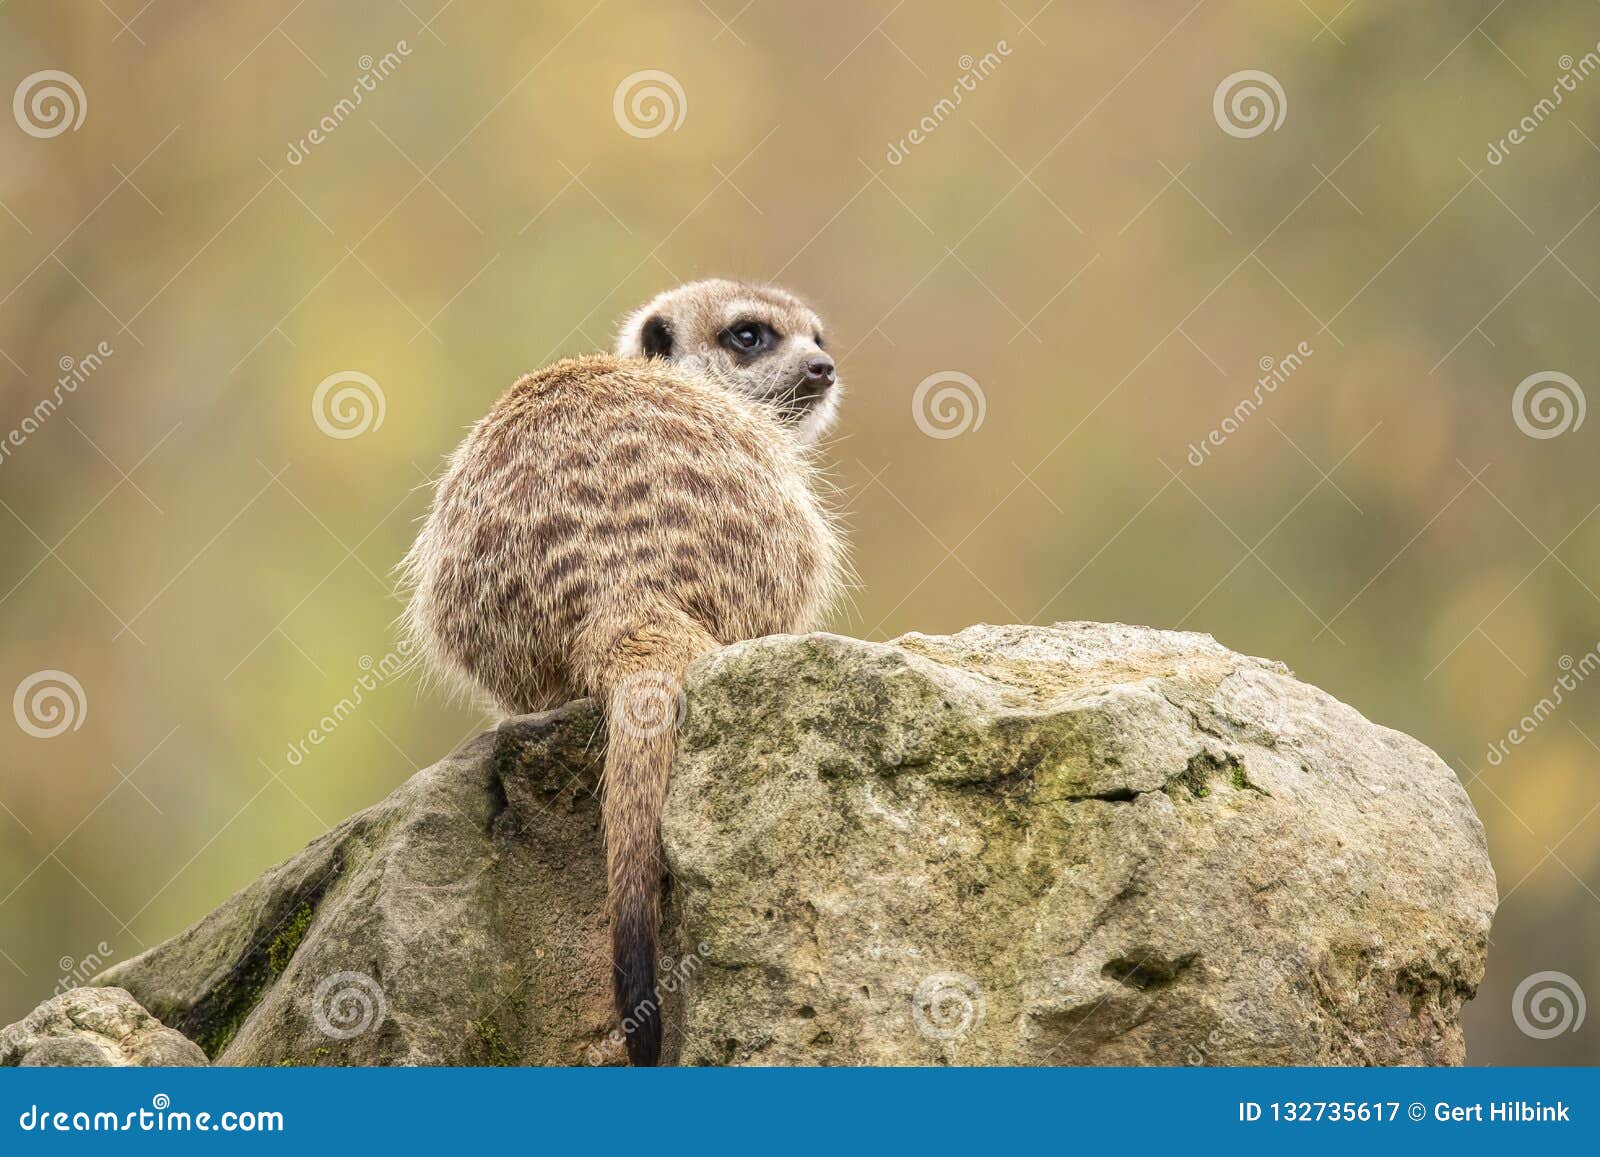 Meerkat, Suricata Suricatta. Africa Stock Image - Image of colony, meerkat:  132735617